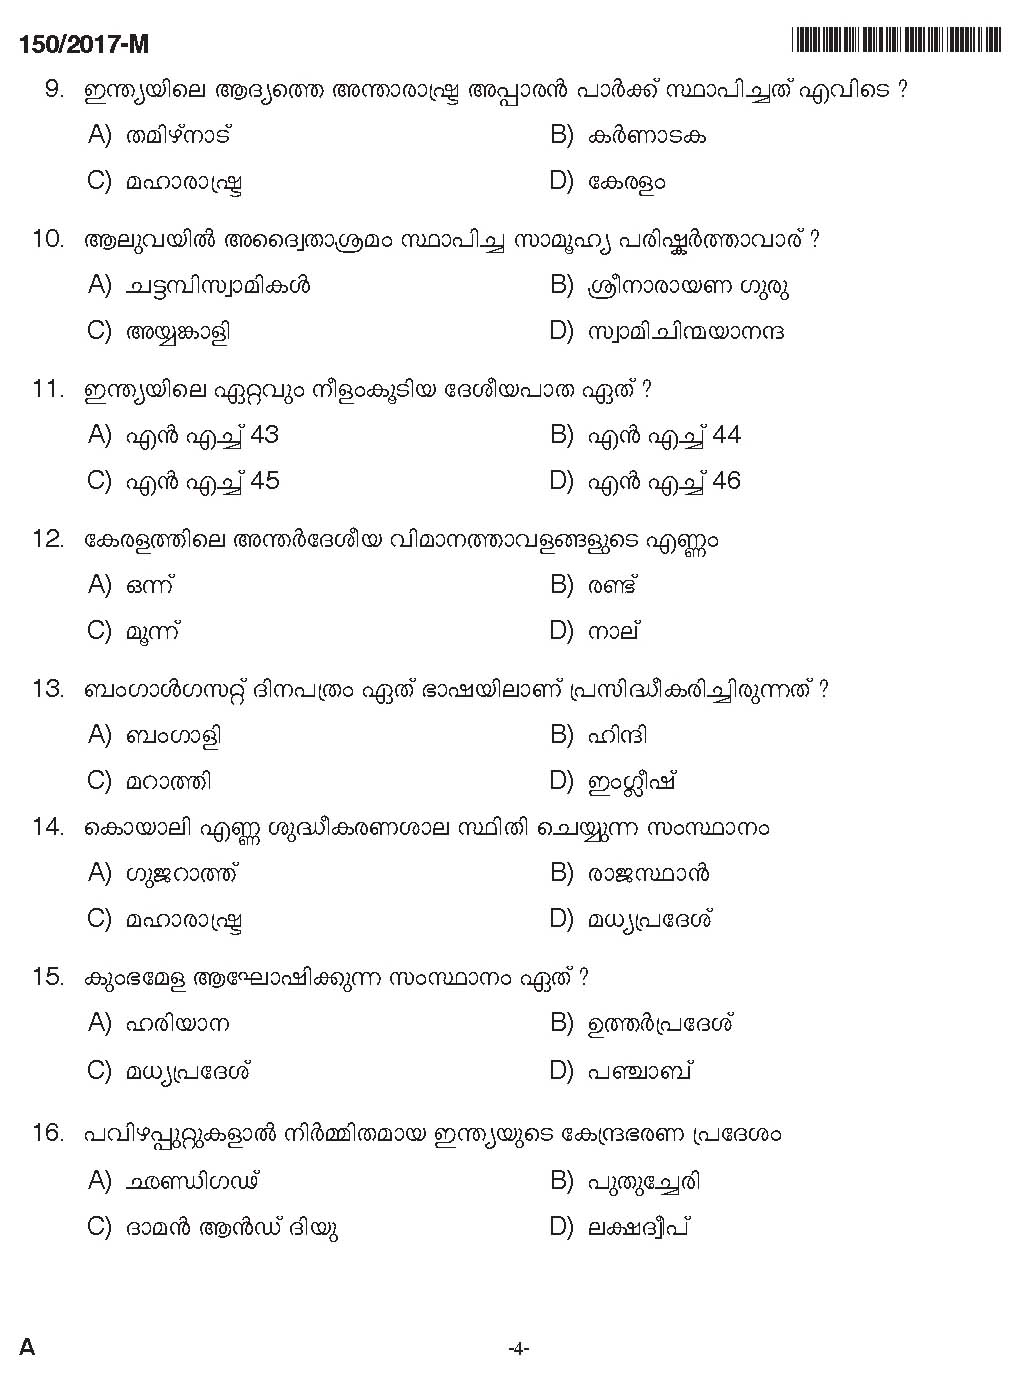 Kerala PSC Boat Deckman Exam Question Code 1502017 M 3